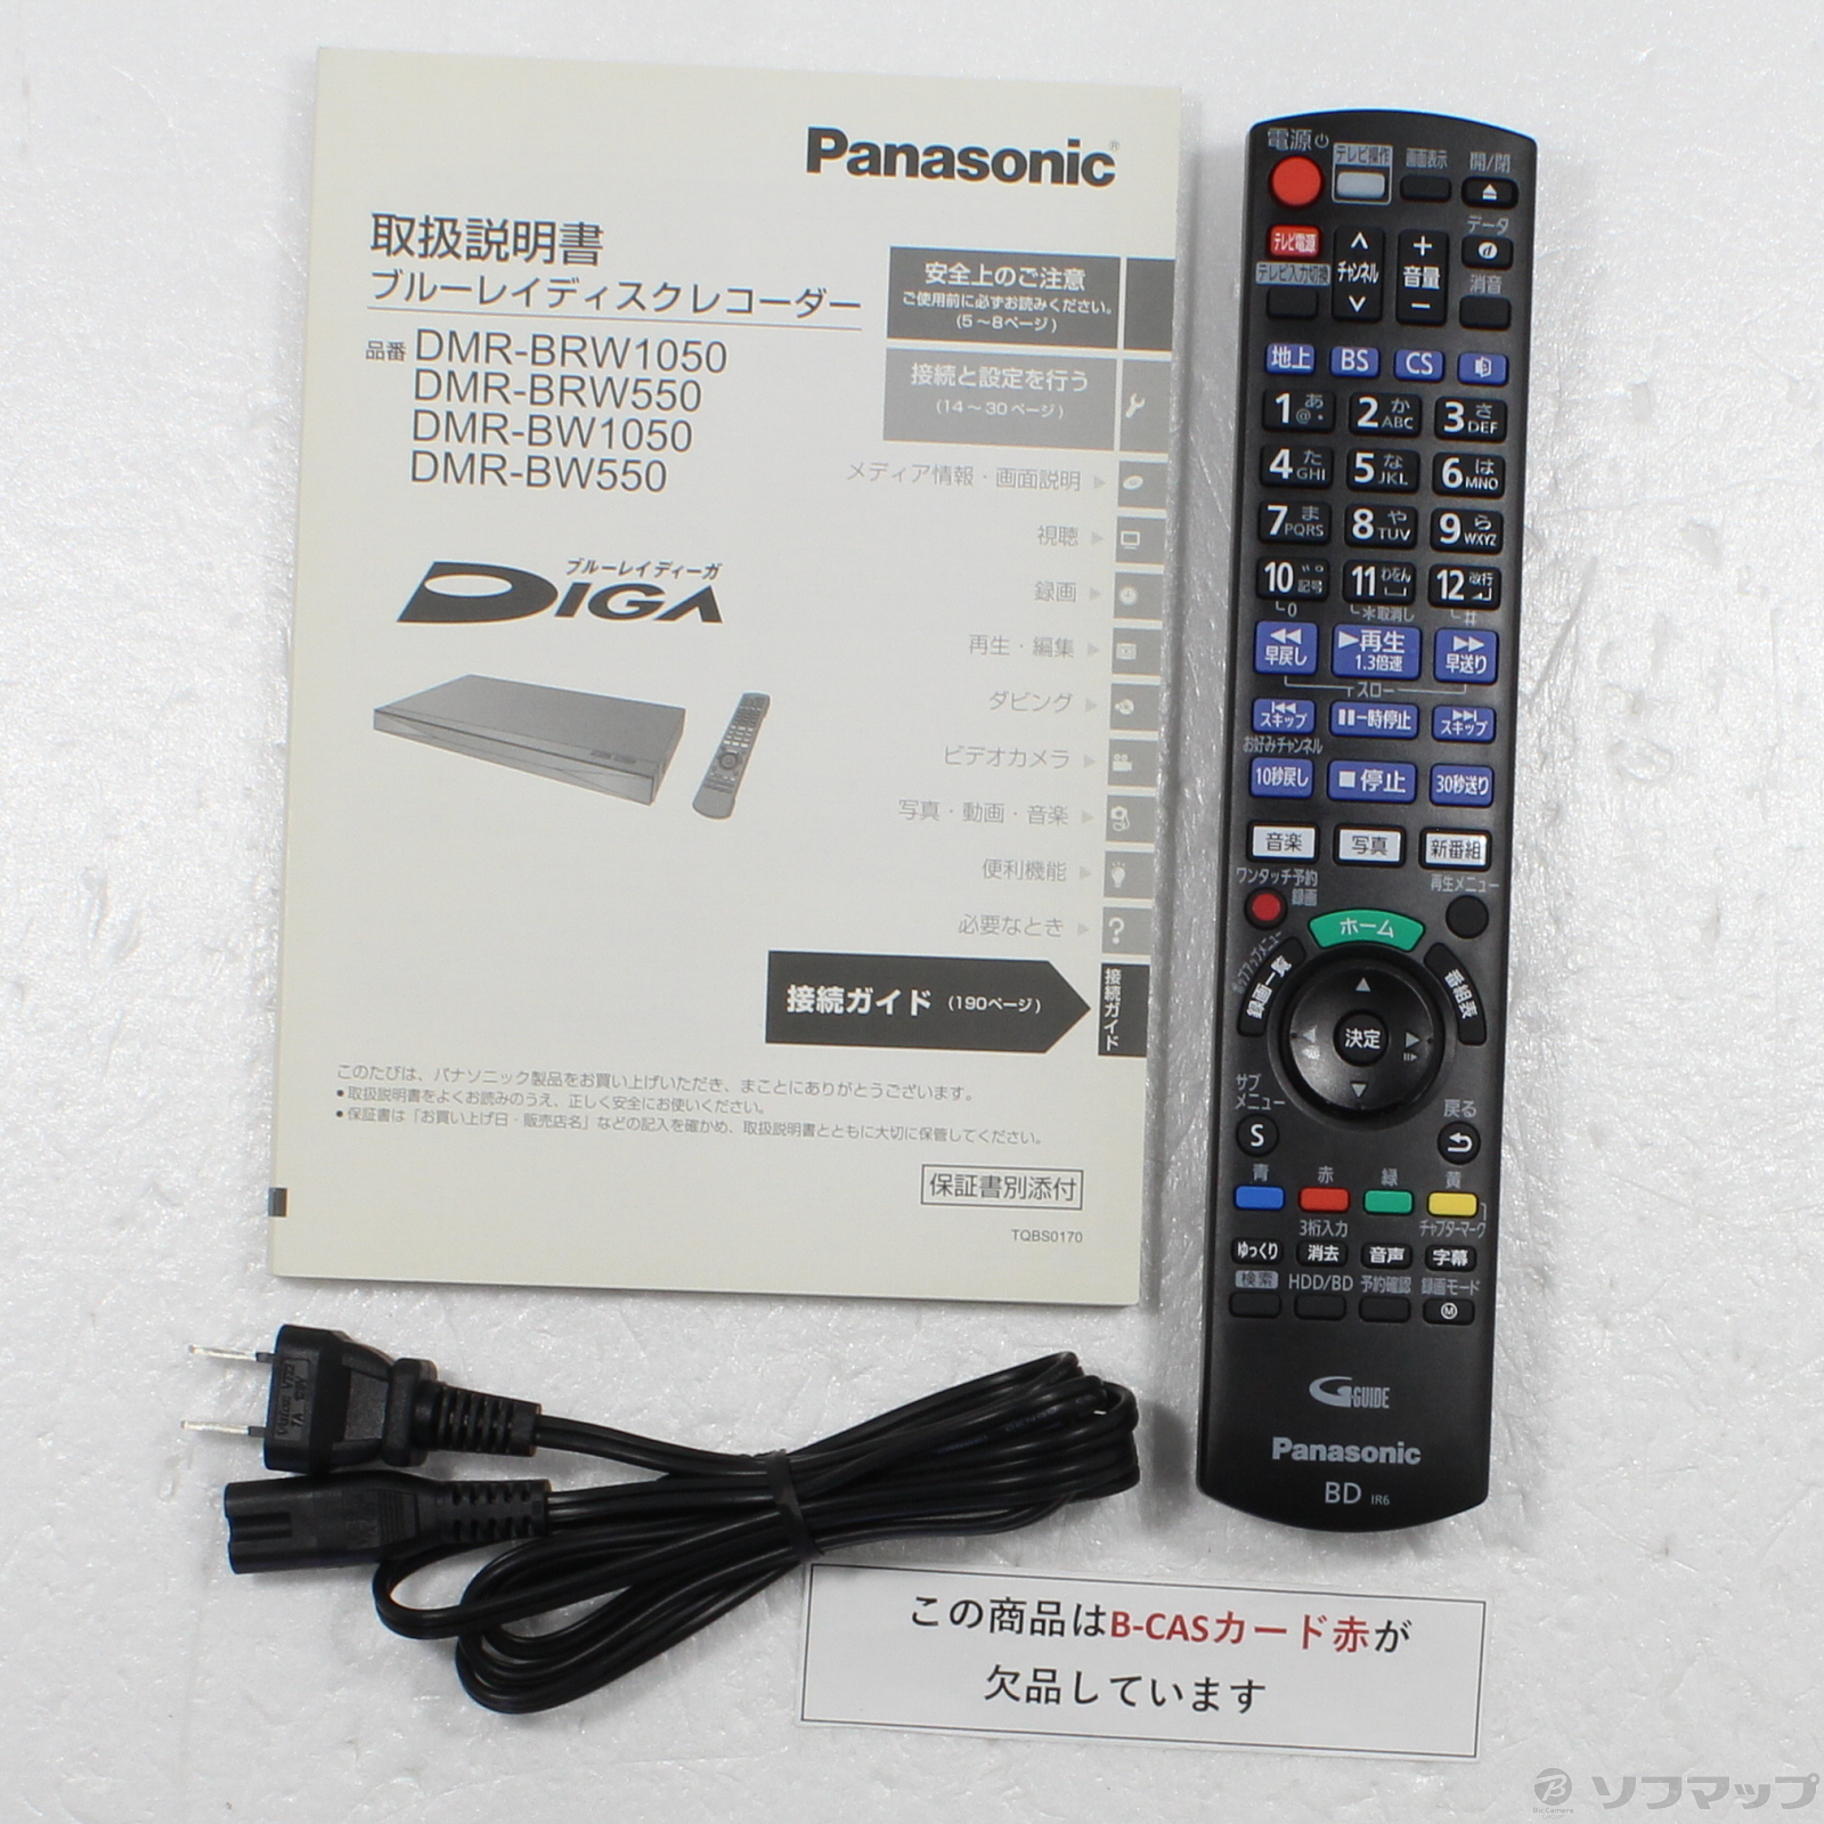 シャープ2番組同時録画 Panasonic ブルーレイレコーダー DMR-BRW1050